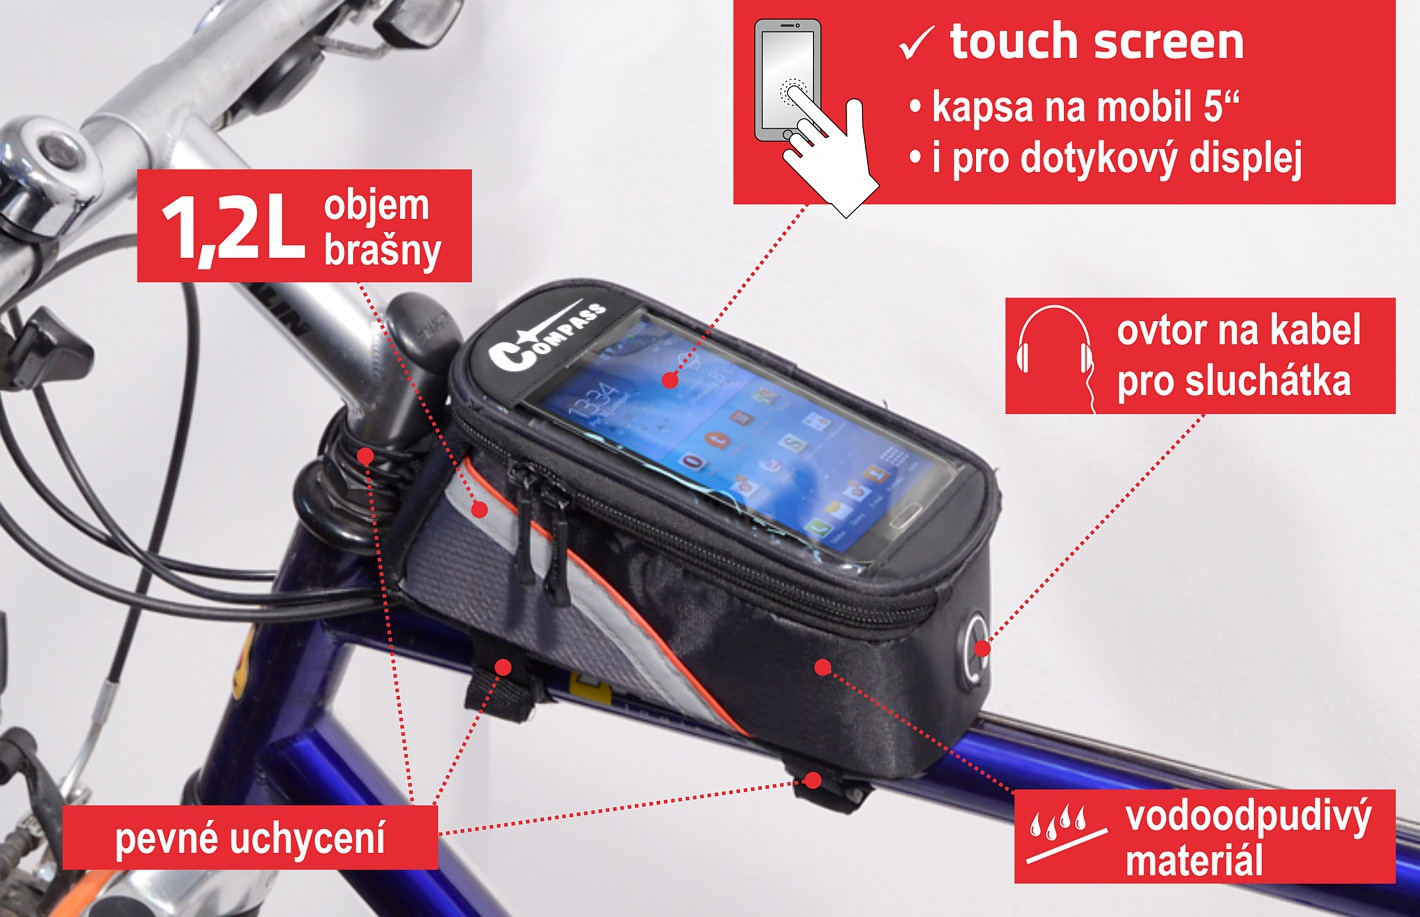 Cyklobrašna Compass Bike 12026 na přední rám vidlice nabízí objem 1,2 l a celou řadu praktických prvků, jako je speciální průhledná kapsa na GPS/smartphone či speciální otvor pro zapojení sluchátek.